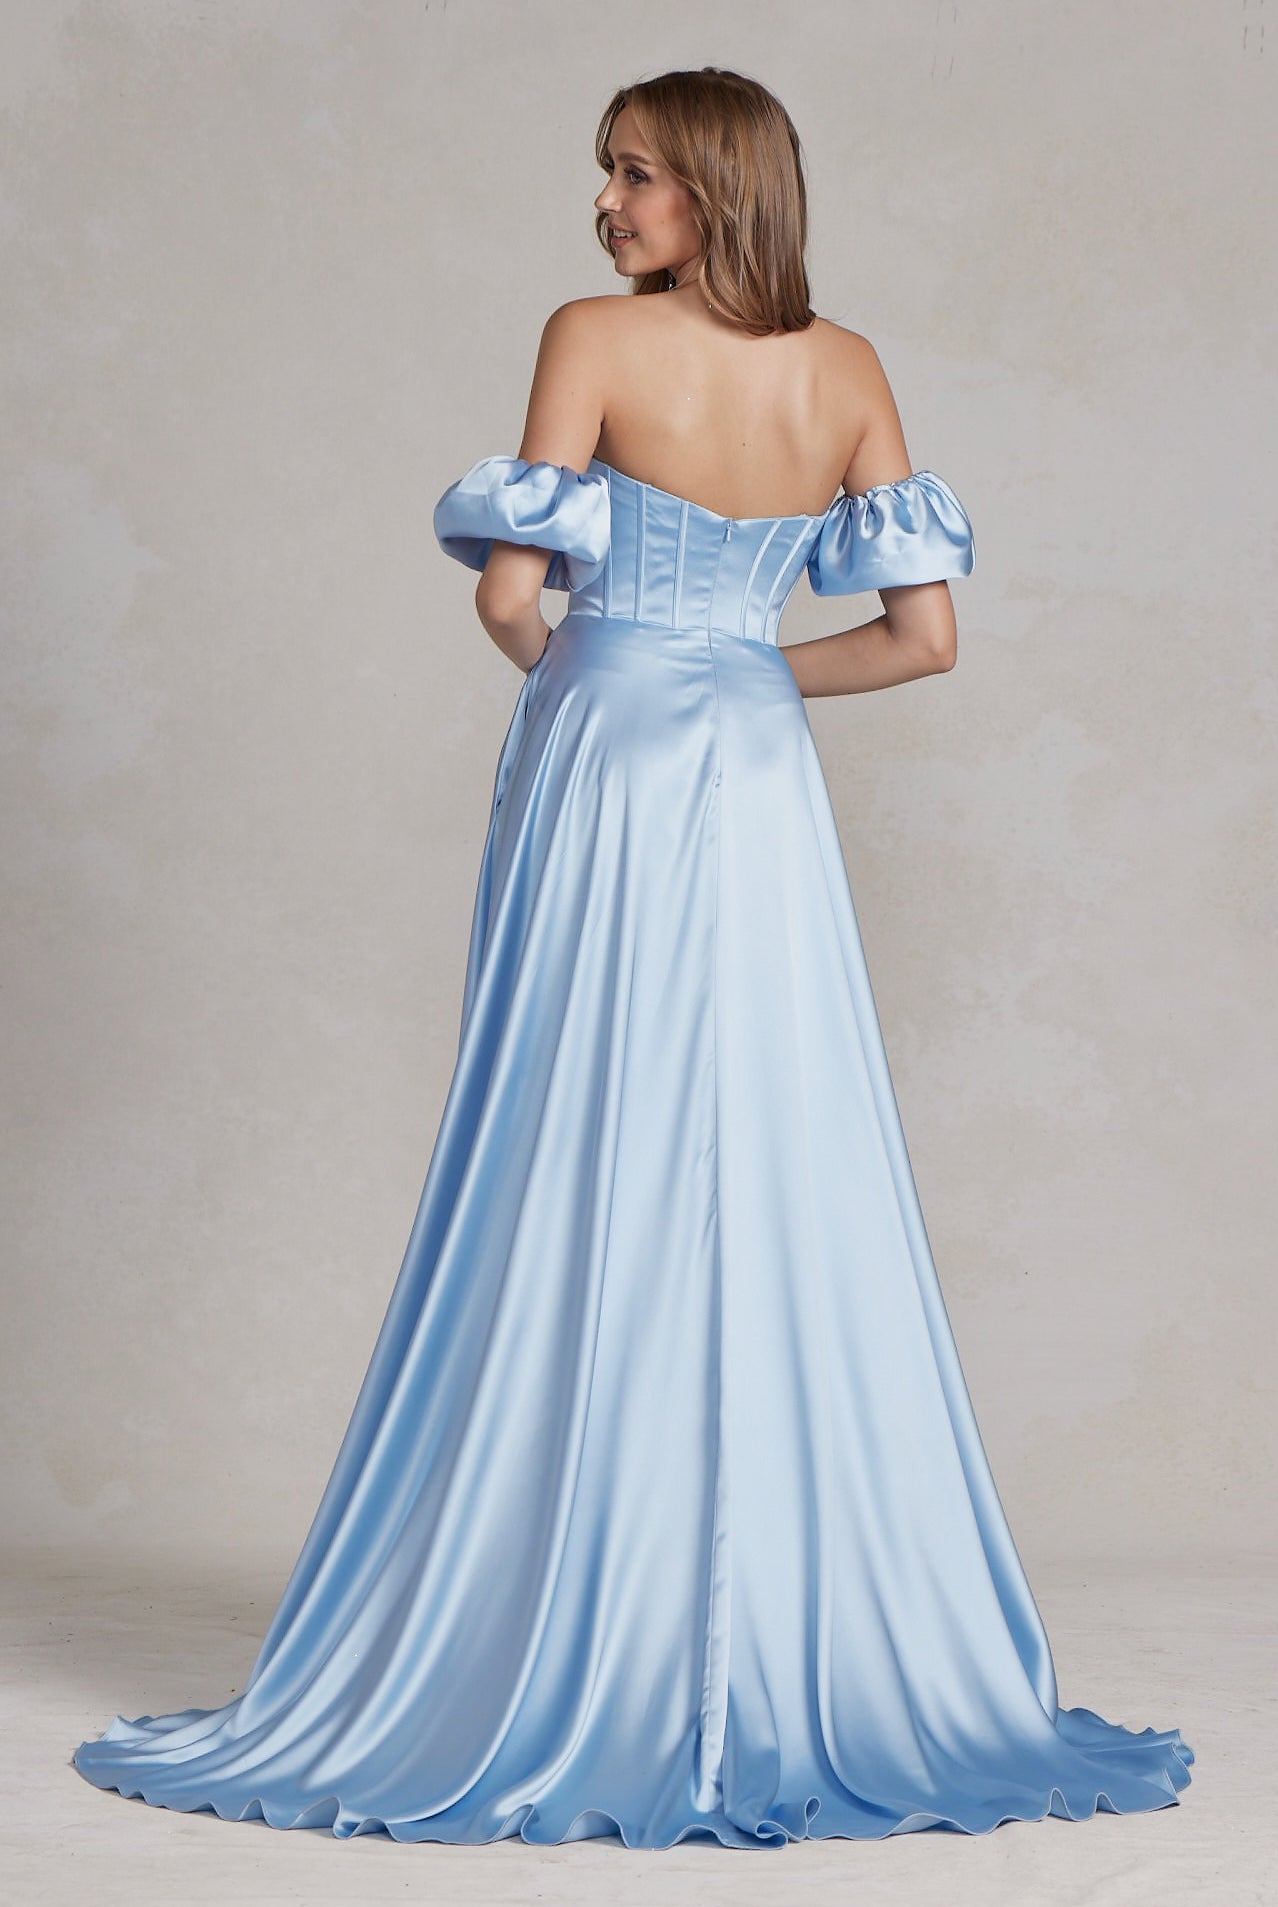 Off Shoulder Sweetheart Satin Side Slit Long Prom Dress NXK1122-Prom Dress-smcfashion.com